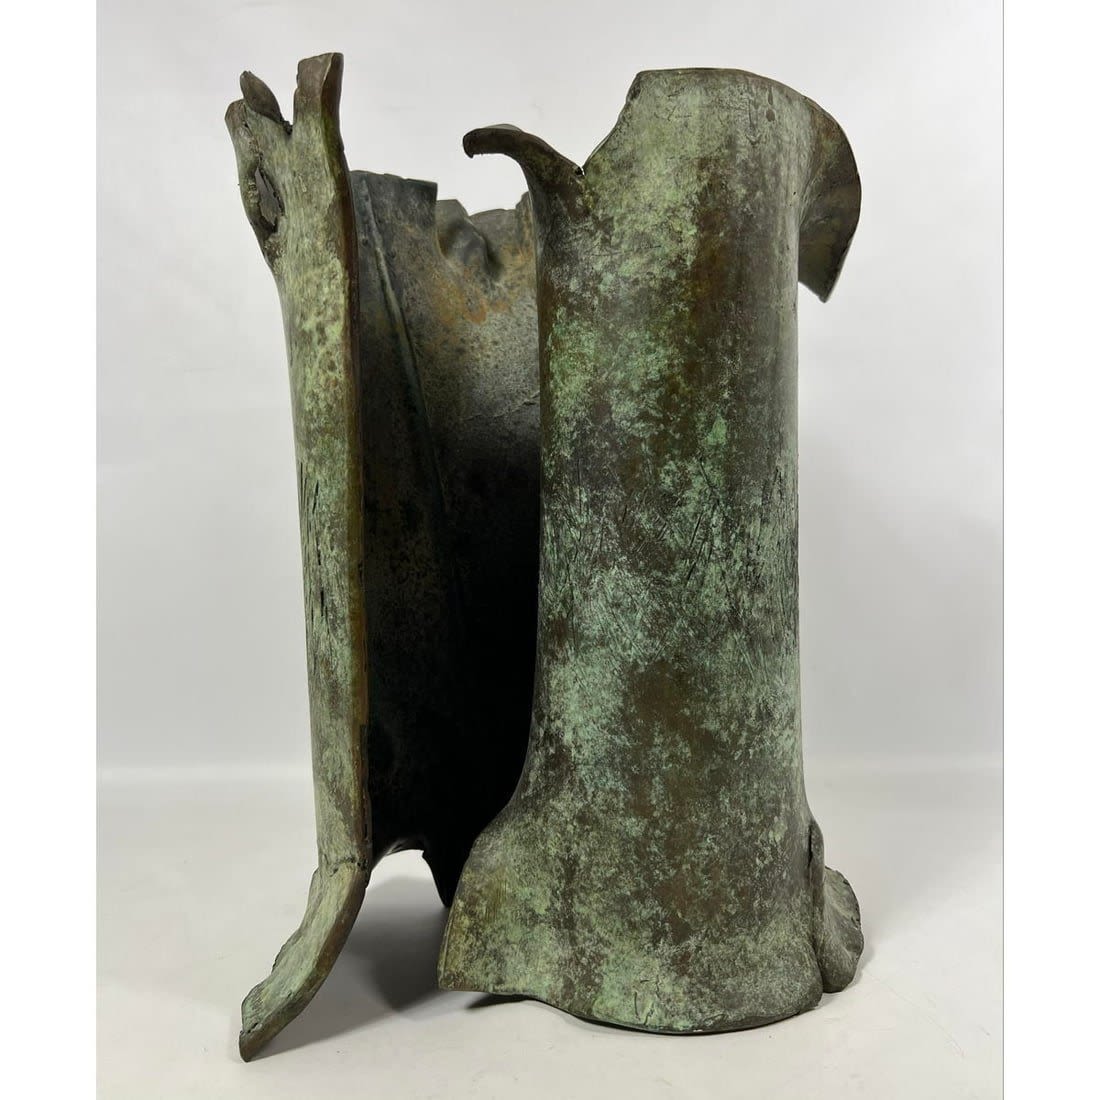 CALABOYIAS Abstract Bronze Sculpture.